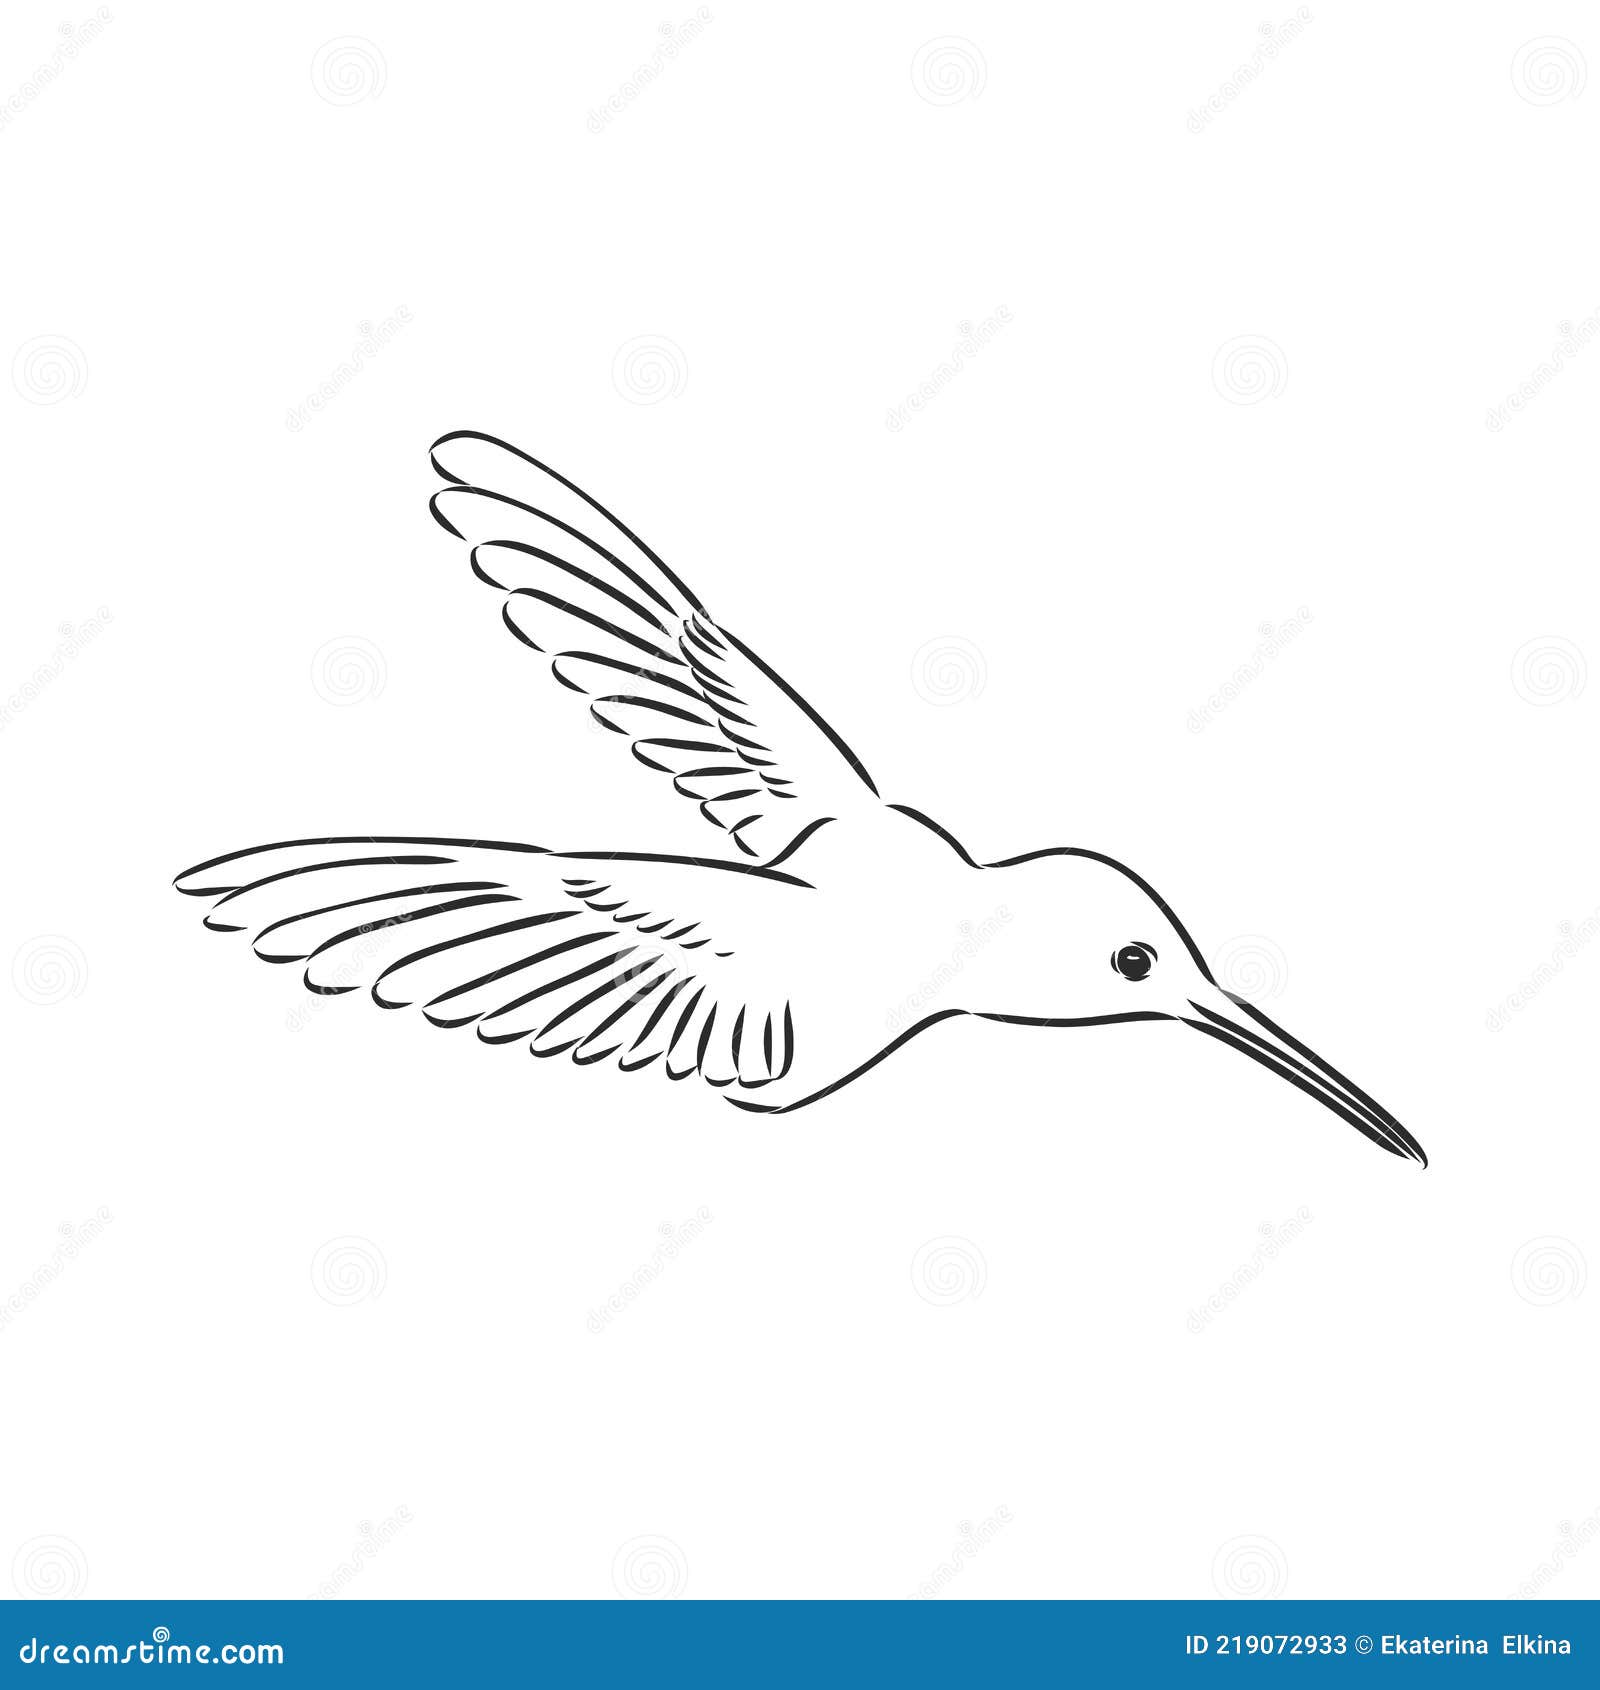 Zentangle Style Hummingbird Vector. Hummingbird Vector Sketch Stock ...